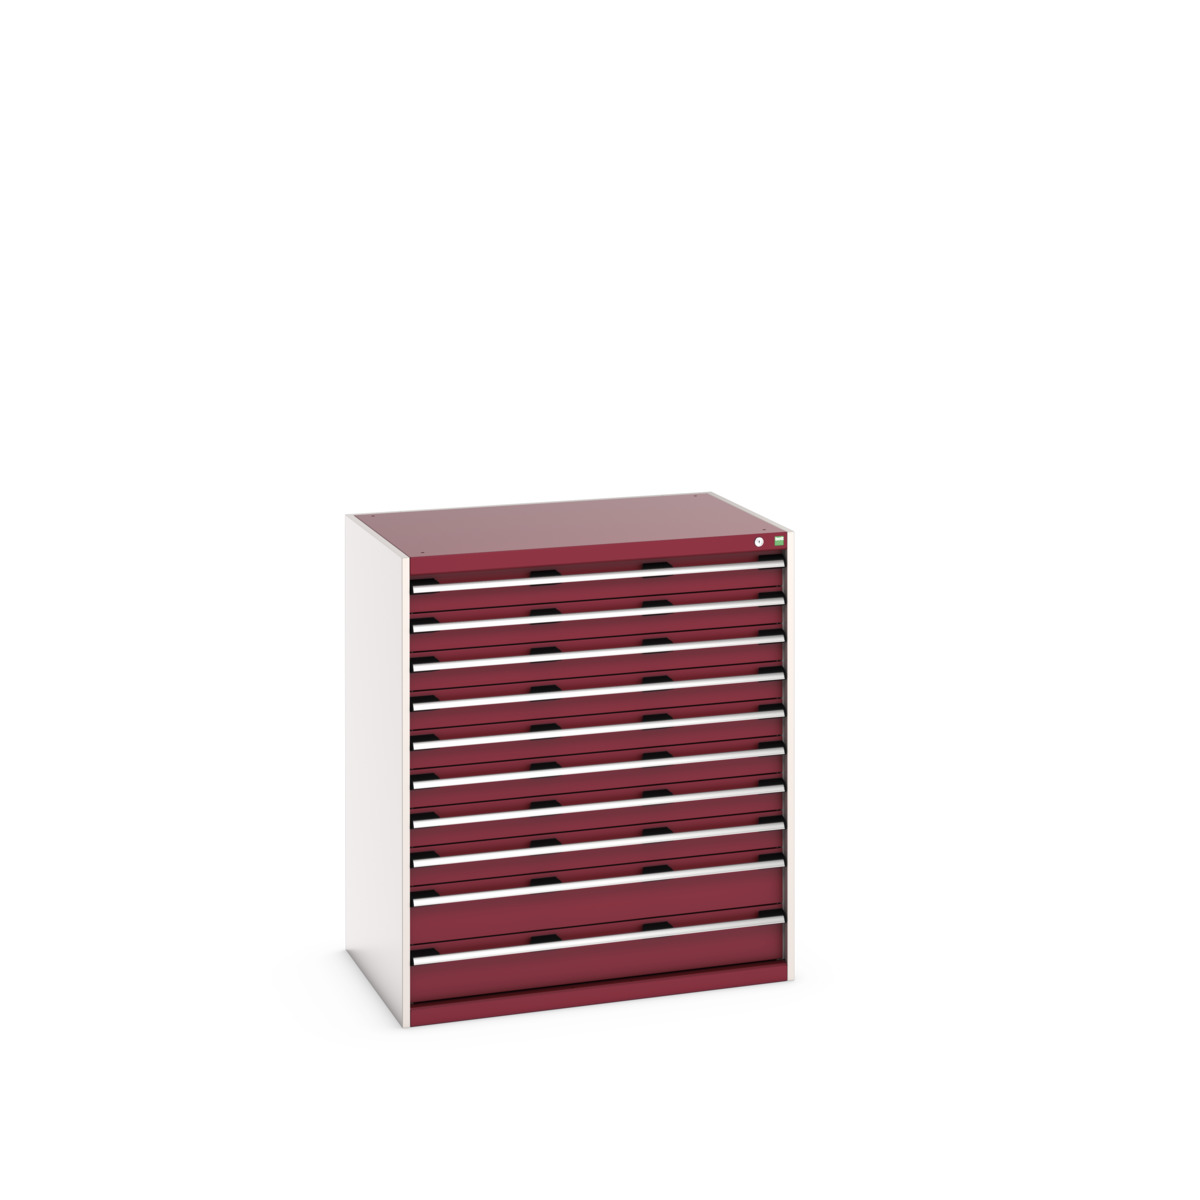 40029034.24V - cubio drawer cabinet